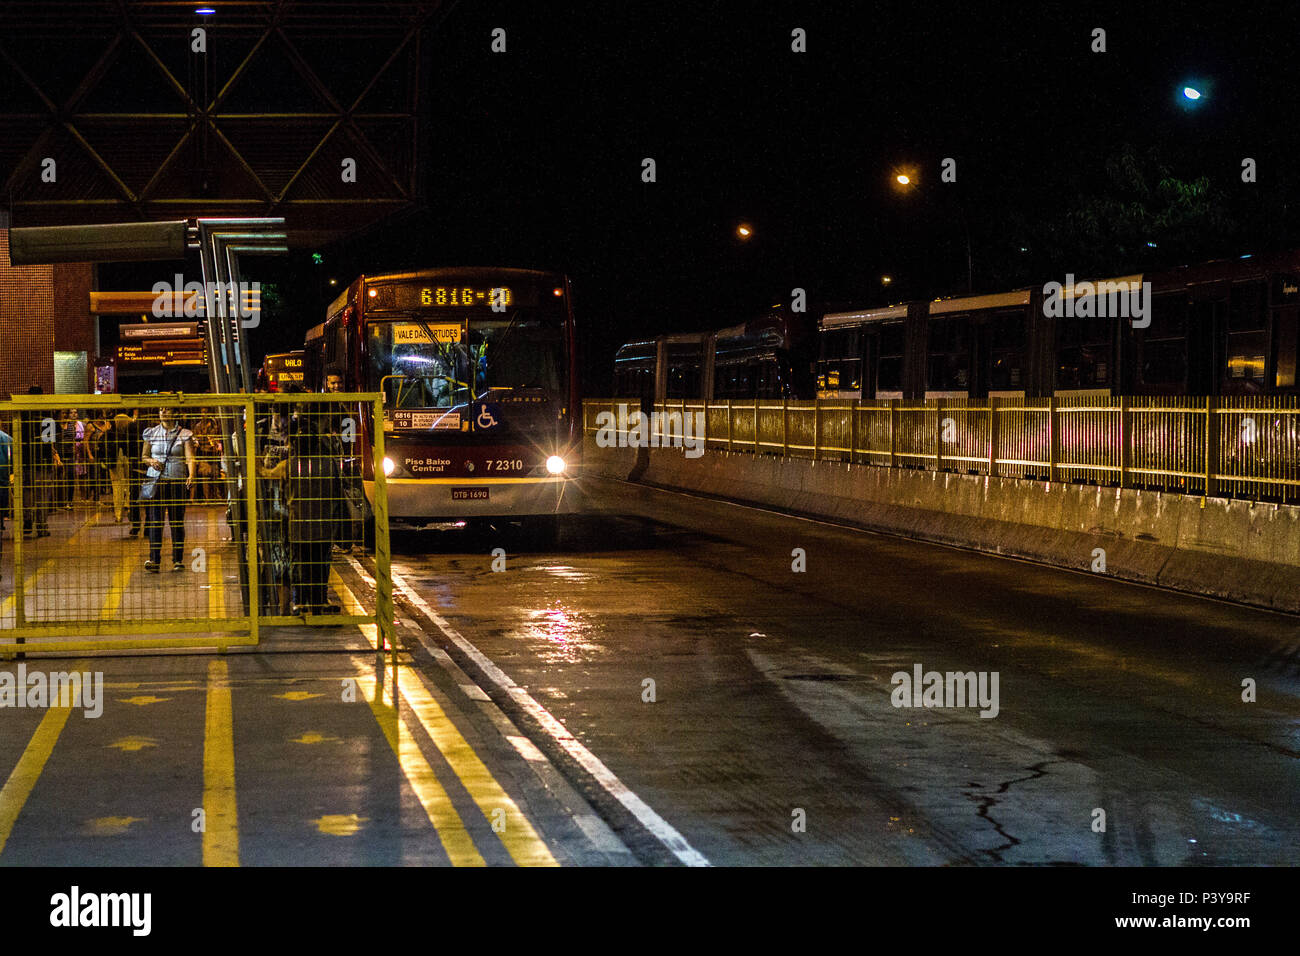 Imagens retratam diversos pontos fare transpote público da capitale paulista. Ônibus estacionado na plataforma fare Termial Capelinha, zona sul capitale da paulista. Foto Stock